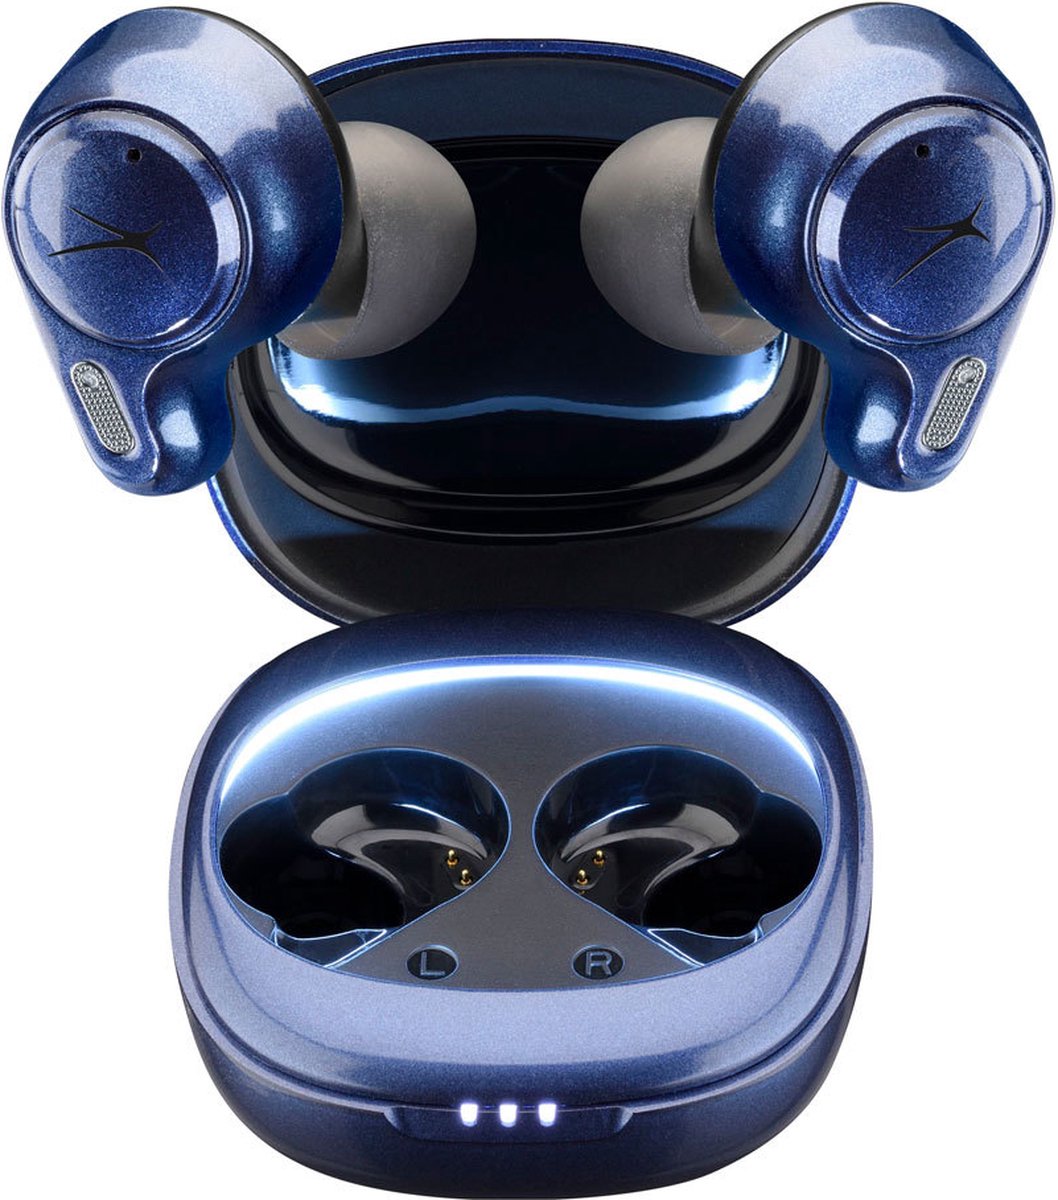 ALTEC LANSING Parade - draadloze hoofdtelefoon (in-ear, zwart/blauw)